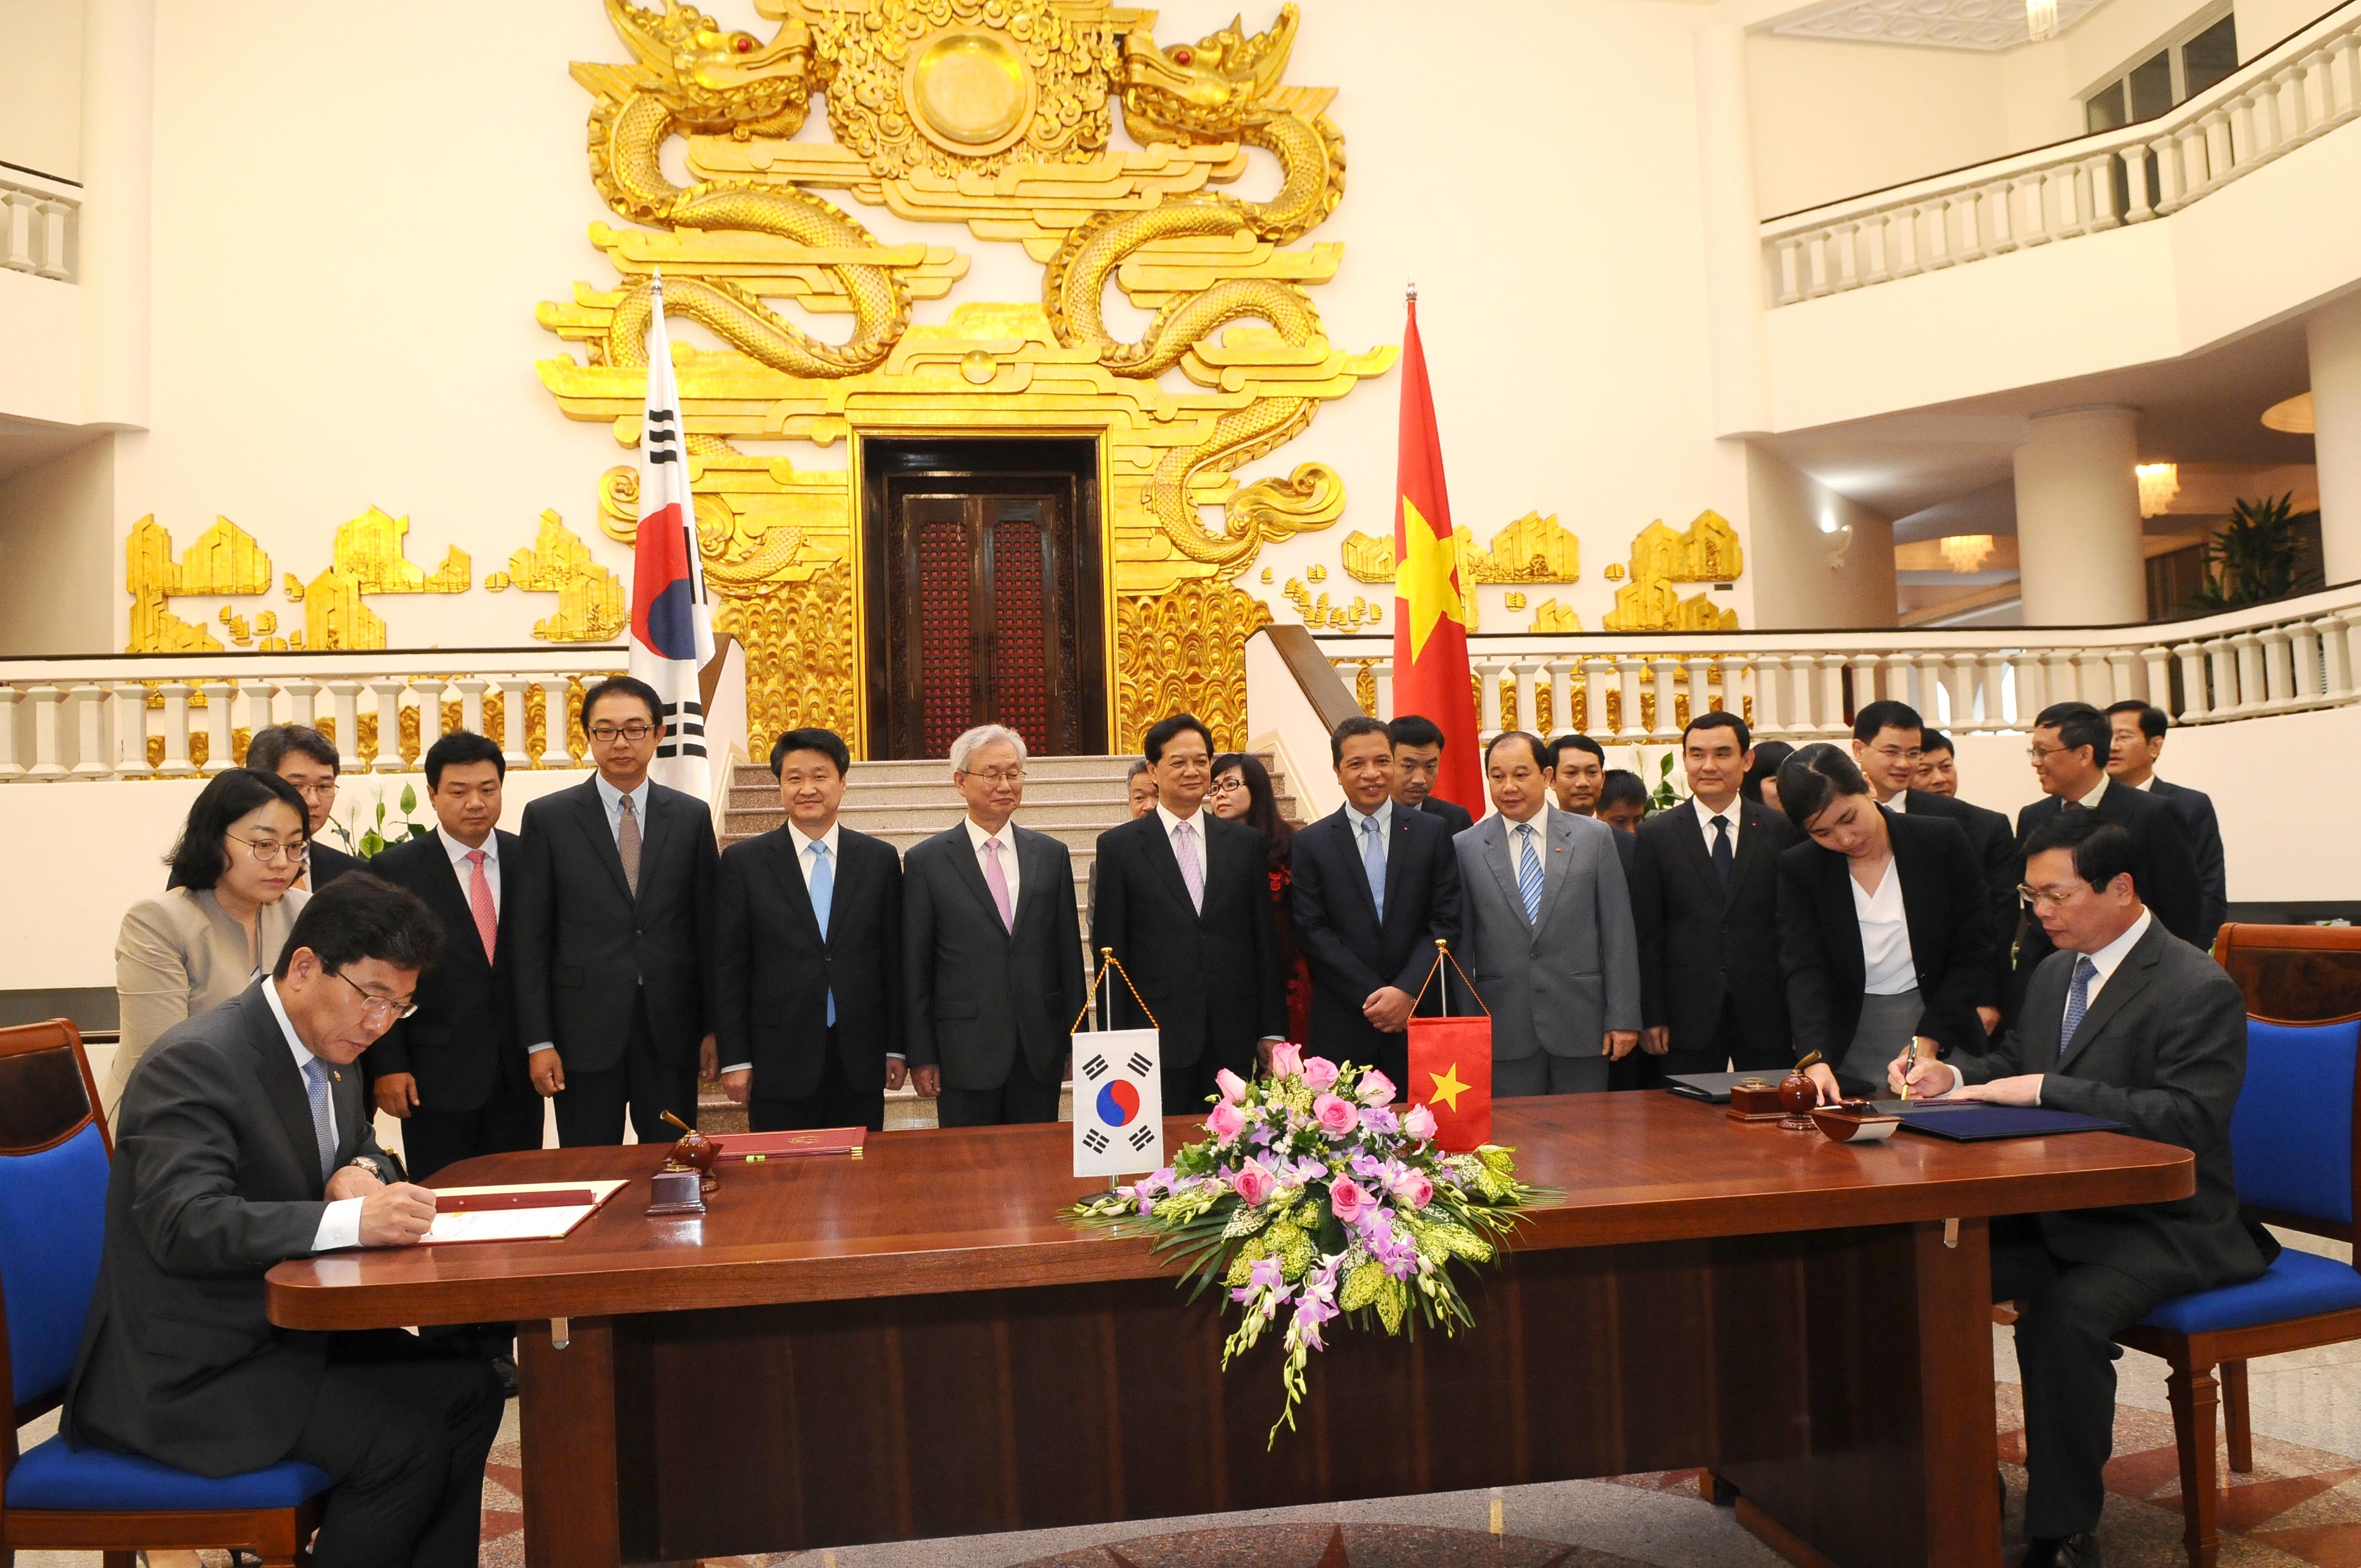 Chính thức ký Hiệp định thương mại tự do Việt Nam - Hàn Quốc